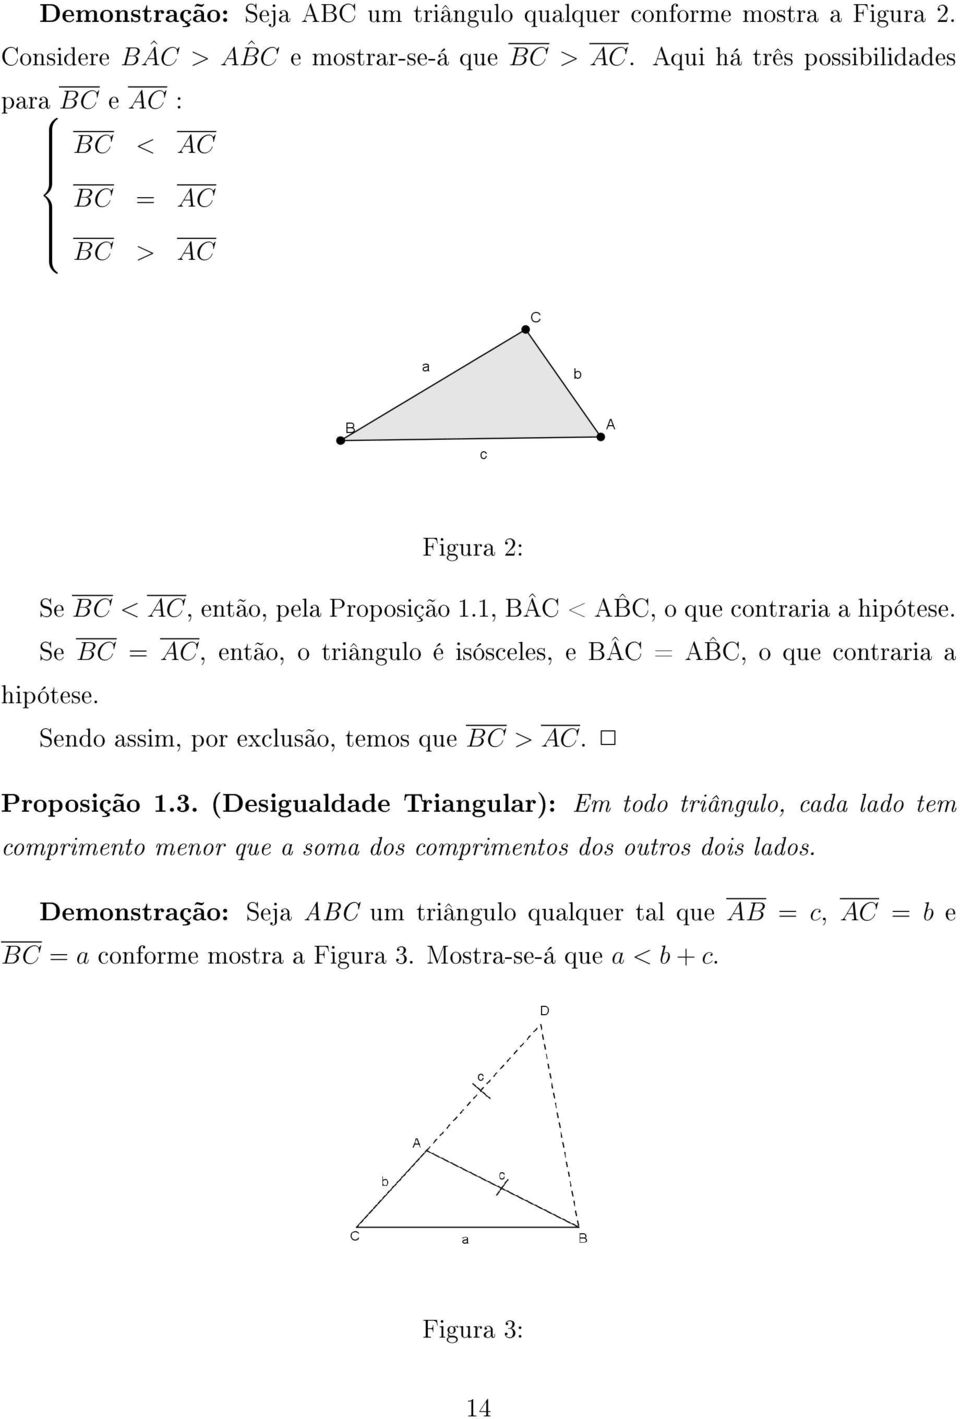 Se BC = AC, então, o triângulo é isósceles, e BÂC = A BC, o que contraria a hipótese. Sendo assim, por exclusão, temos que BC > AC. Proposição 1.3.